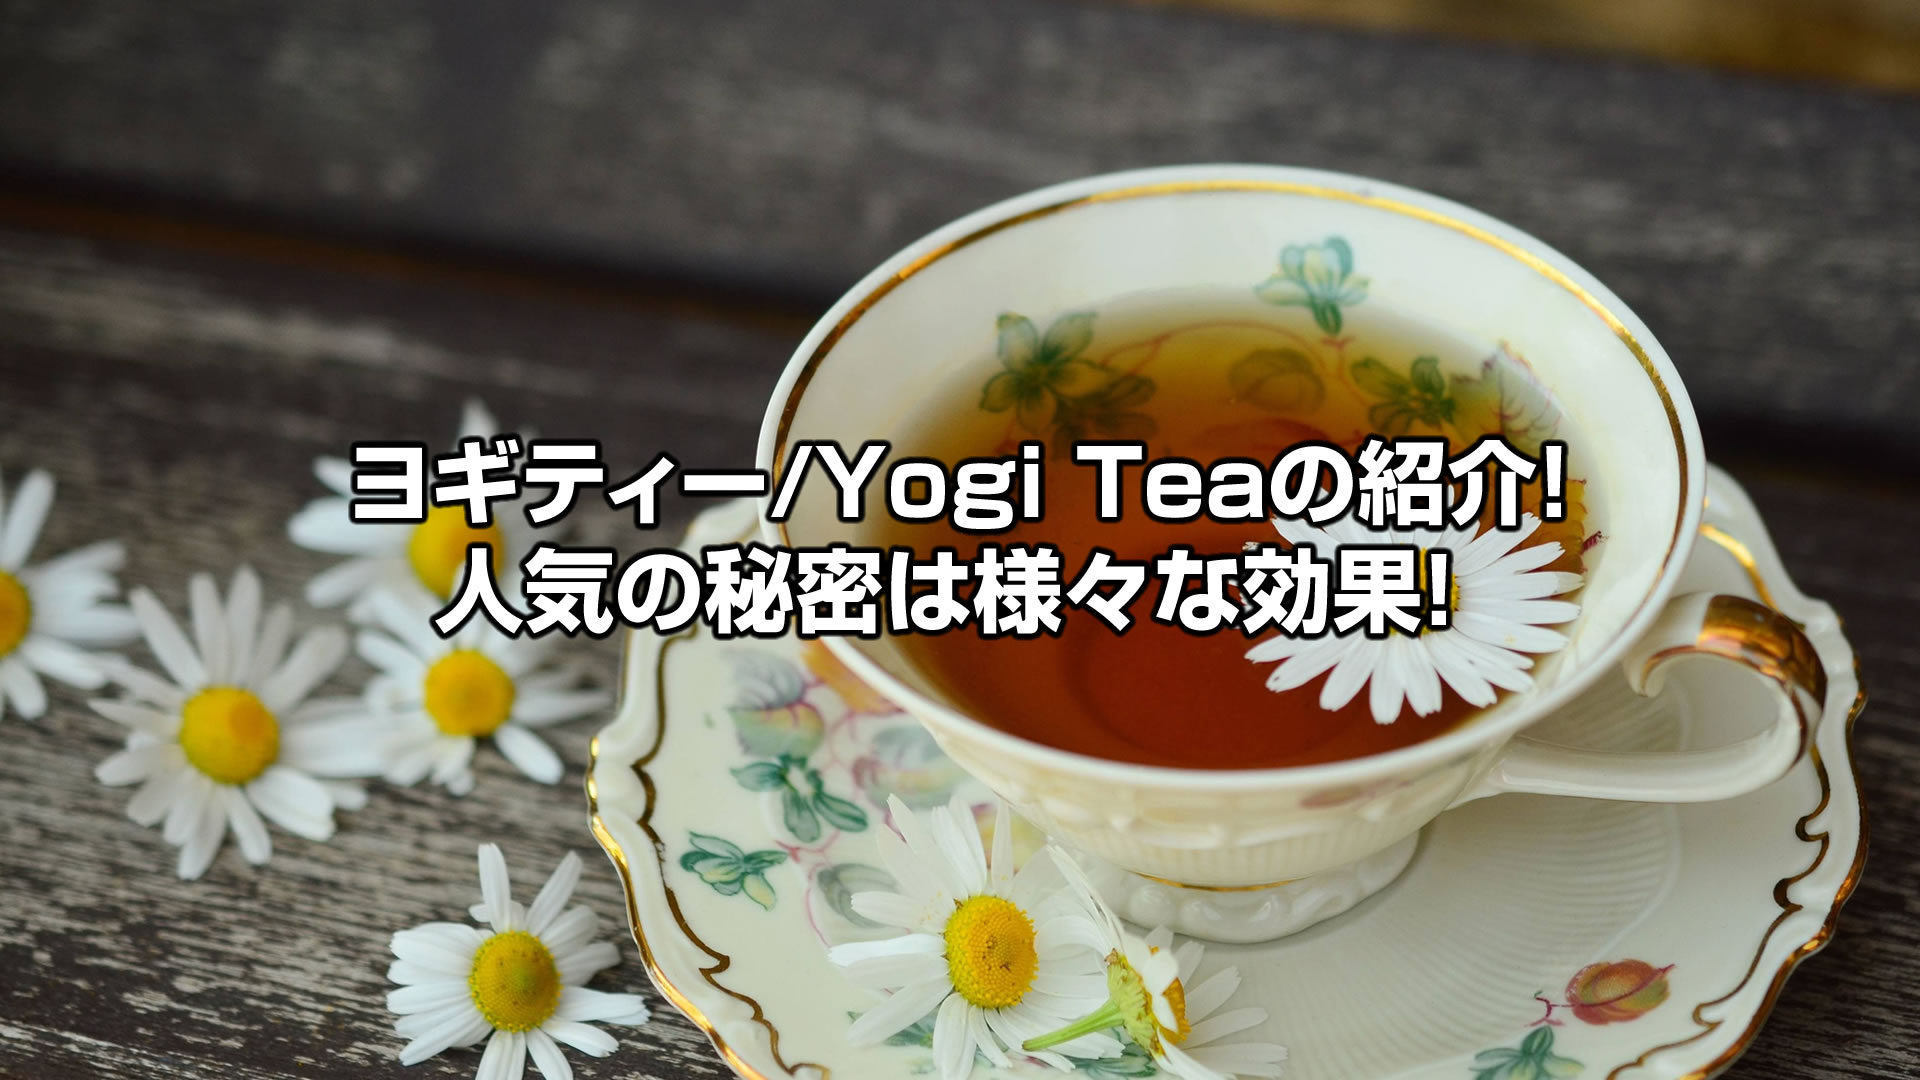 おすすめヨギティー/Yogi Tea！iHerbでも人気の秘密は様々な効果！